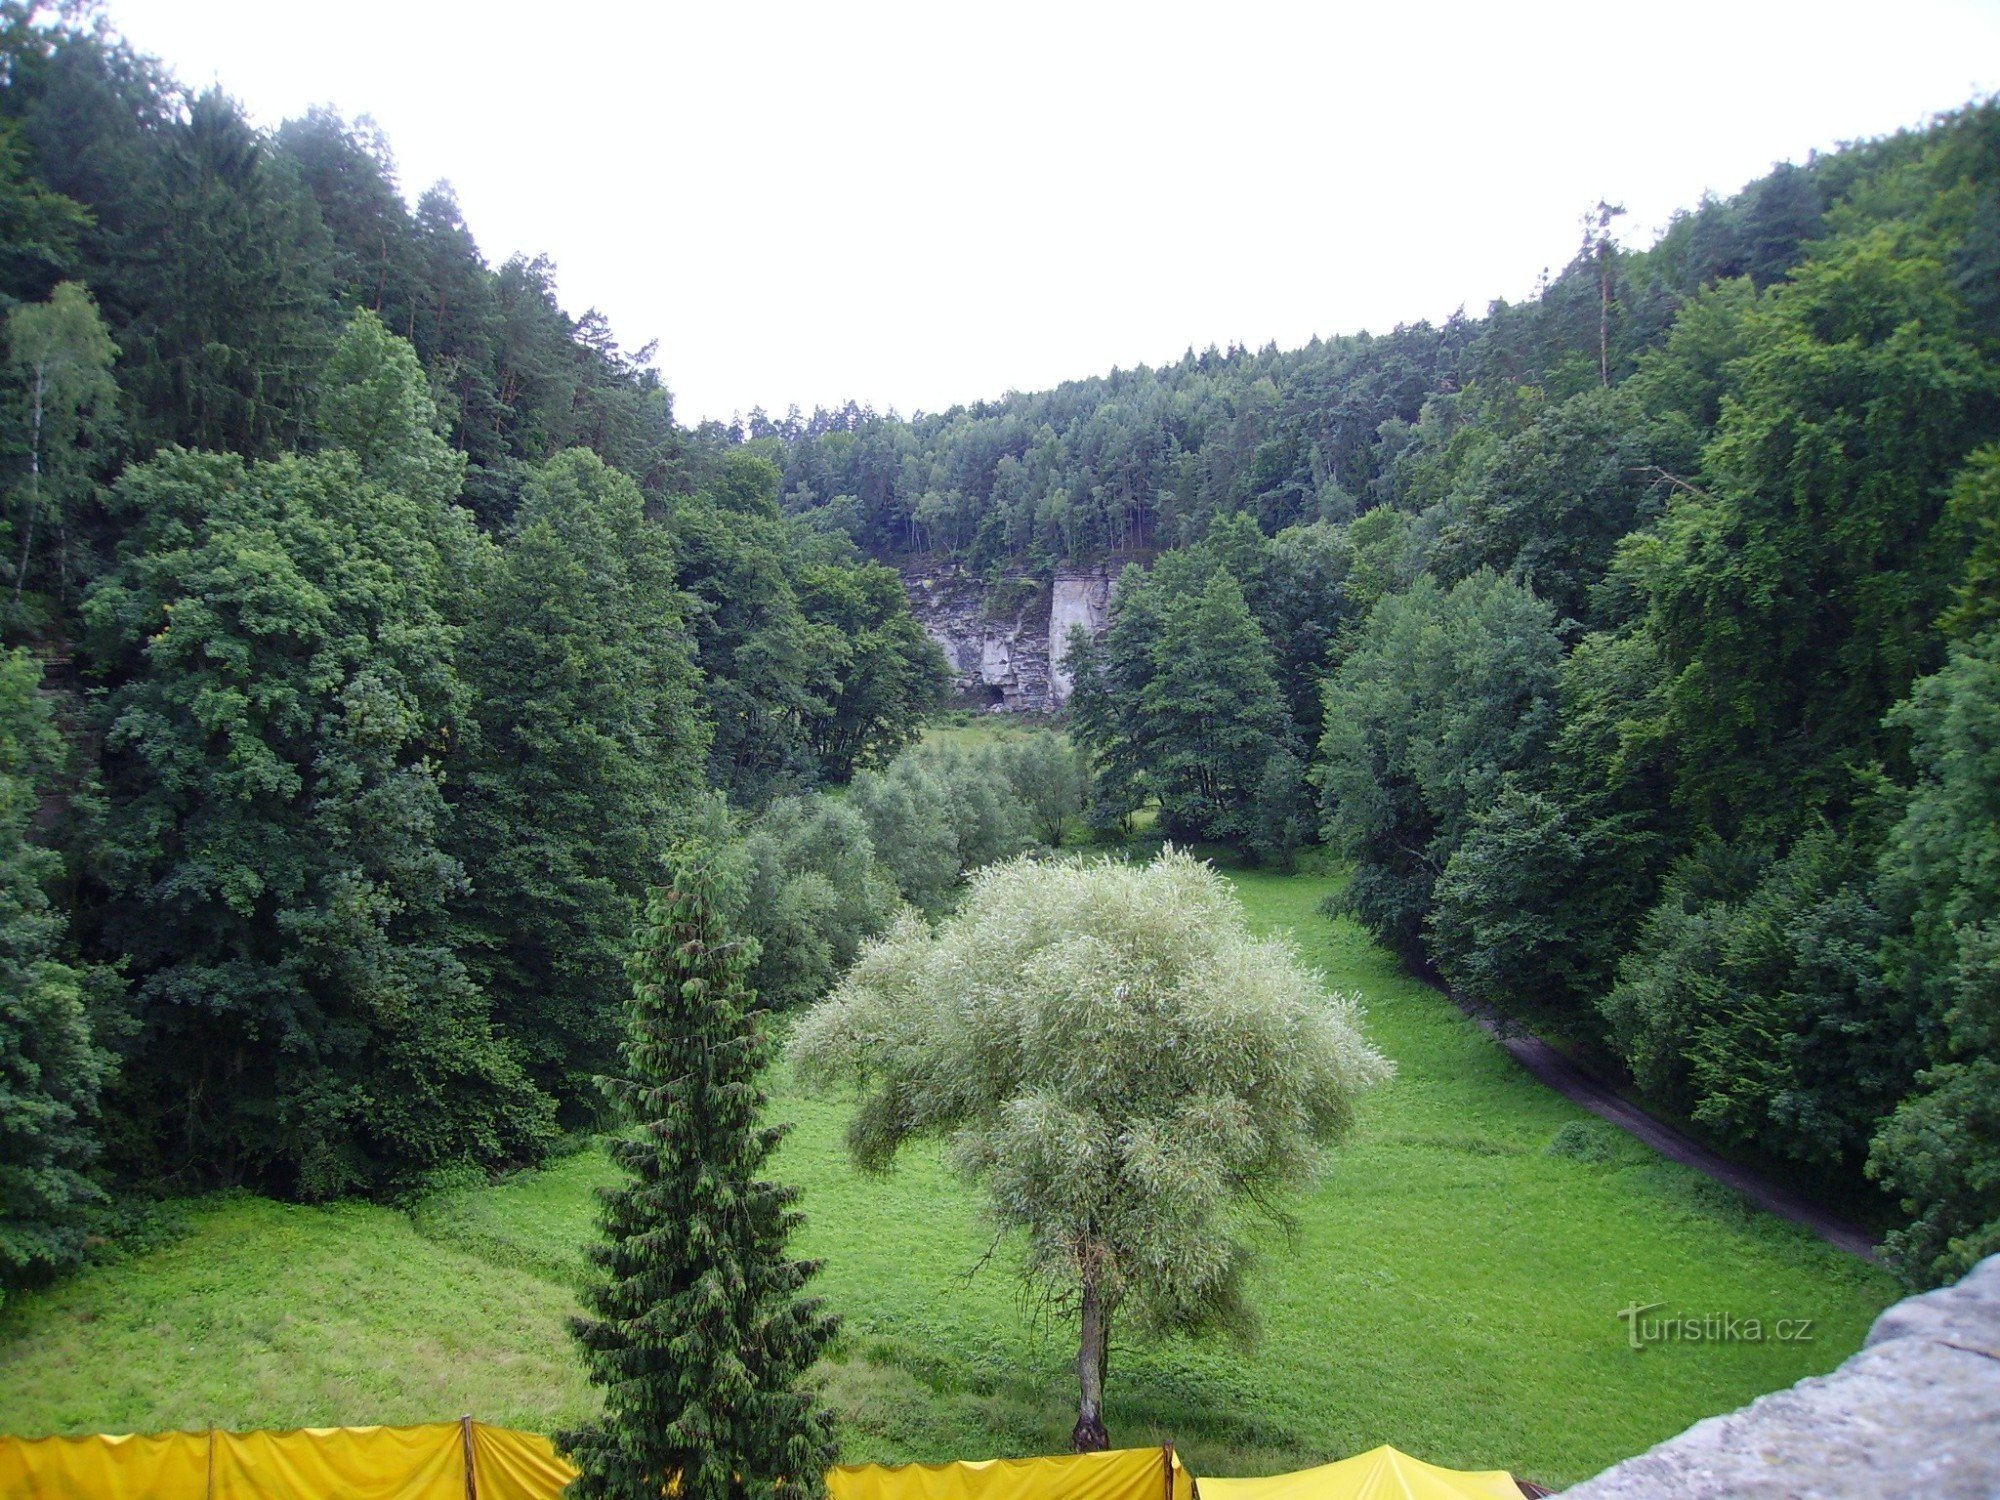 the Plakánek valley